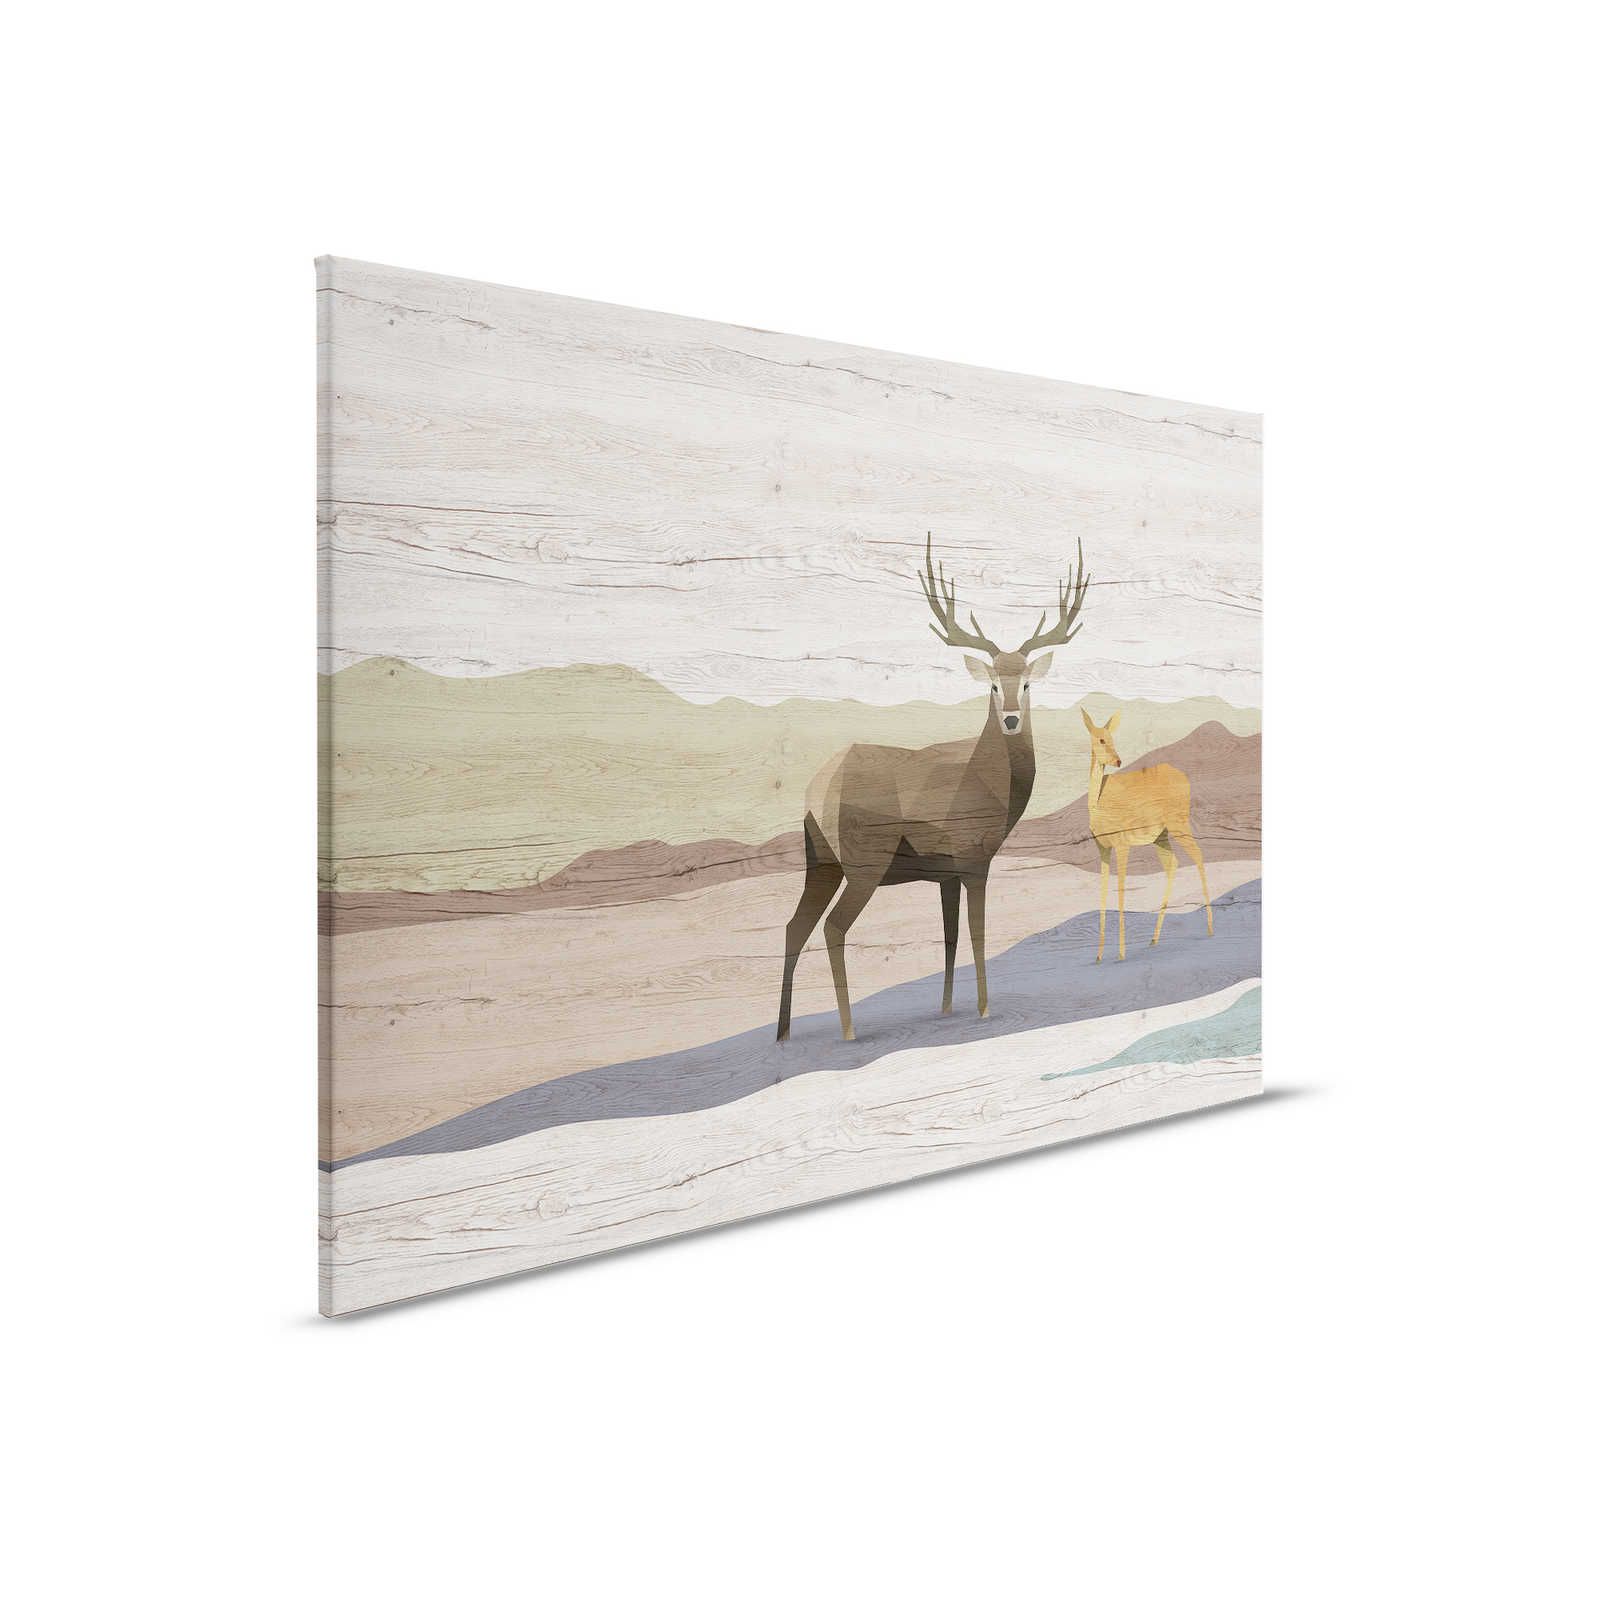         Yukon 2 - Canvas painting wood grain, deer & roe deer design - 0.90 m x 0.60 m
    